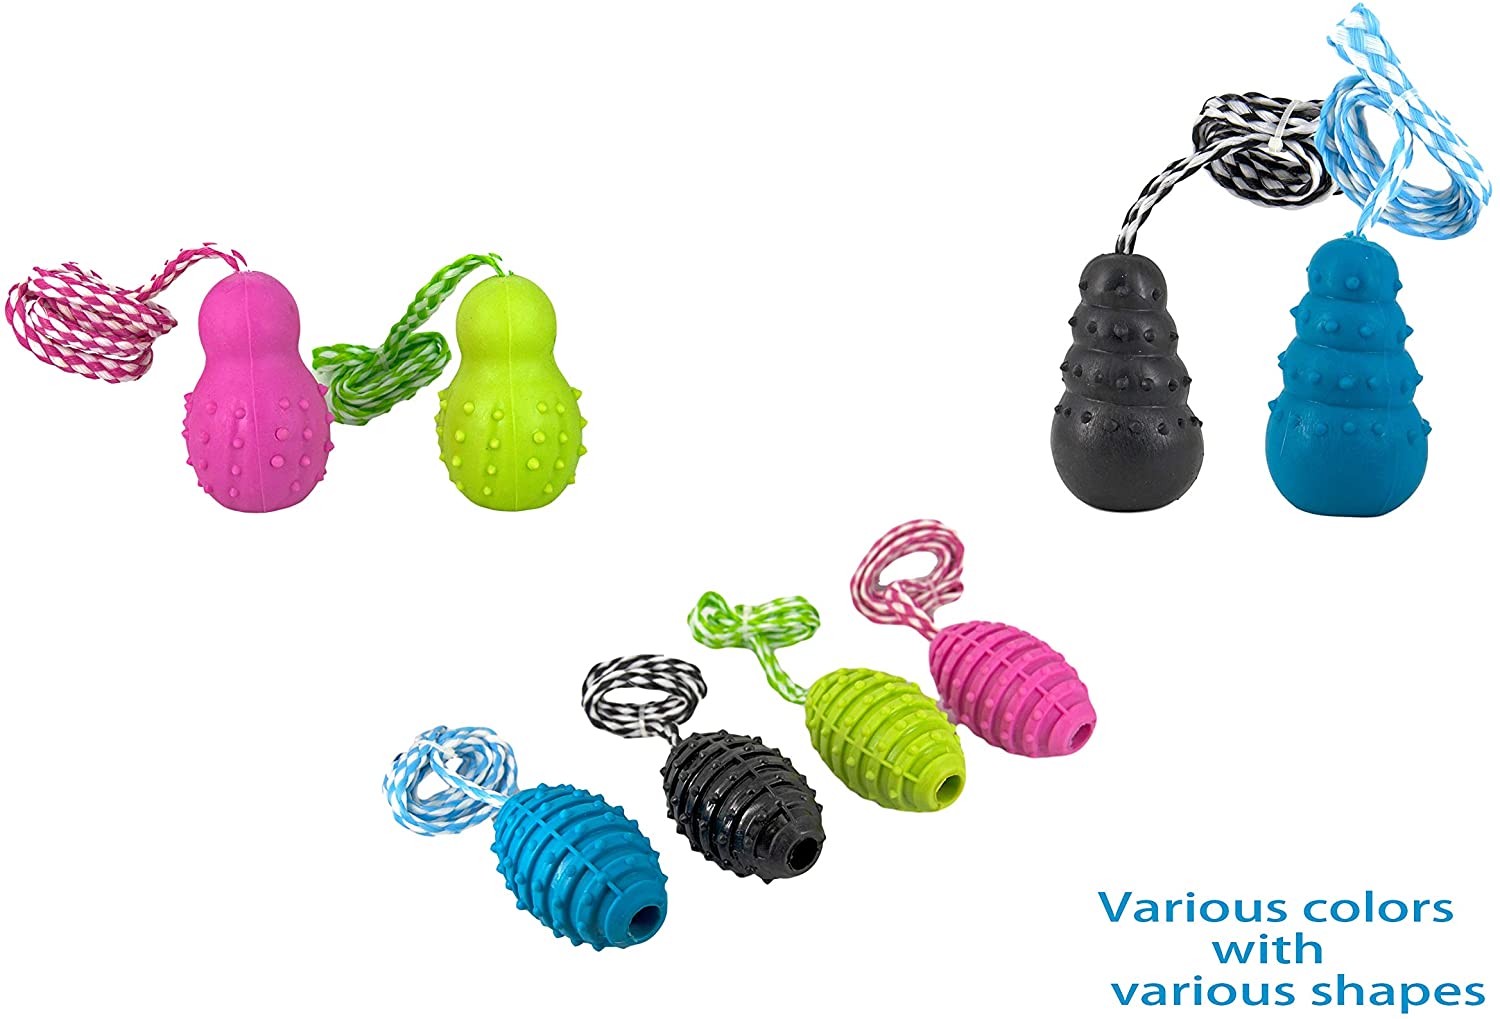  Juguetes de goma masticar divertido saltarina resistente sonido de forma torre en una cuerda de 40 cm para perros más un regalo de pelota vinilo de 9 cm, enviados de formas y colores aleatorios. 